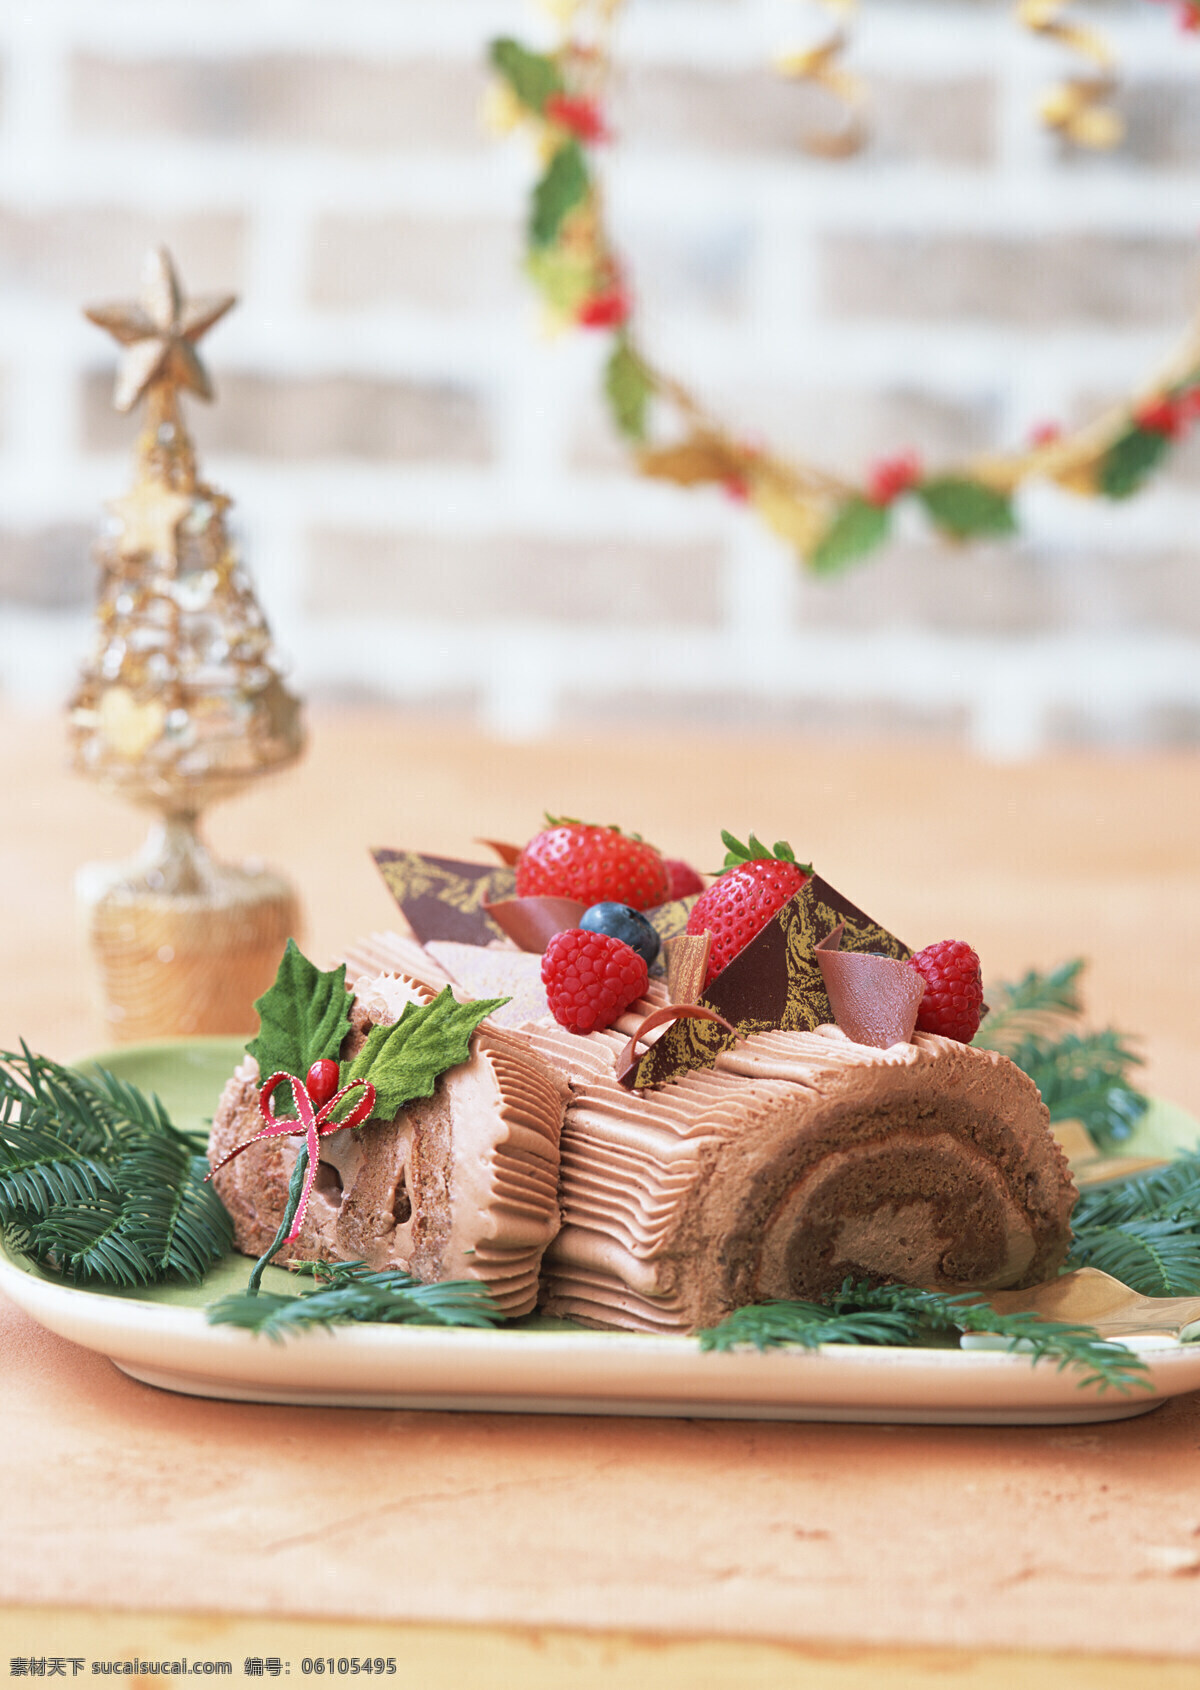 高清图片 蛋糕 慕斯蛋糕 巧克力蛋糕 巧克力 甜点 手工 烘焙 圣诞蛋糕 餐饮美食